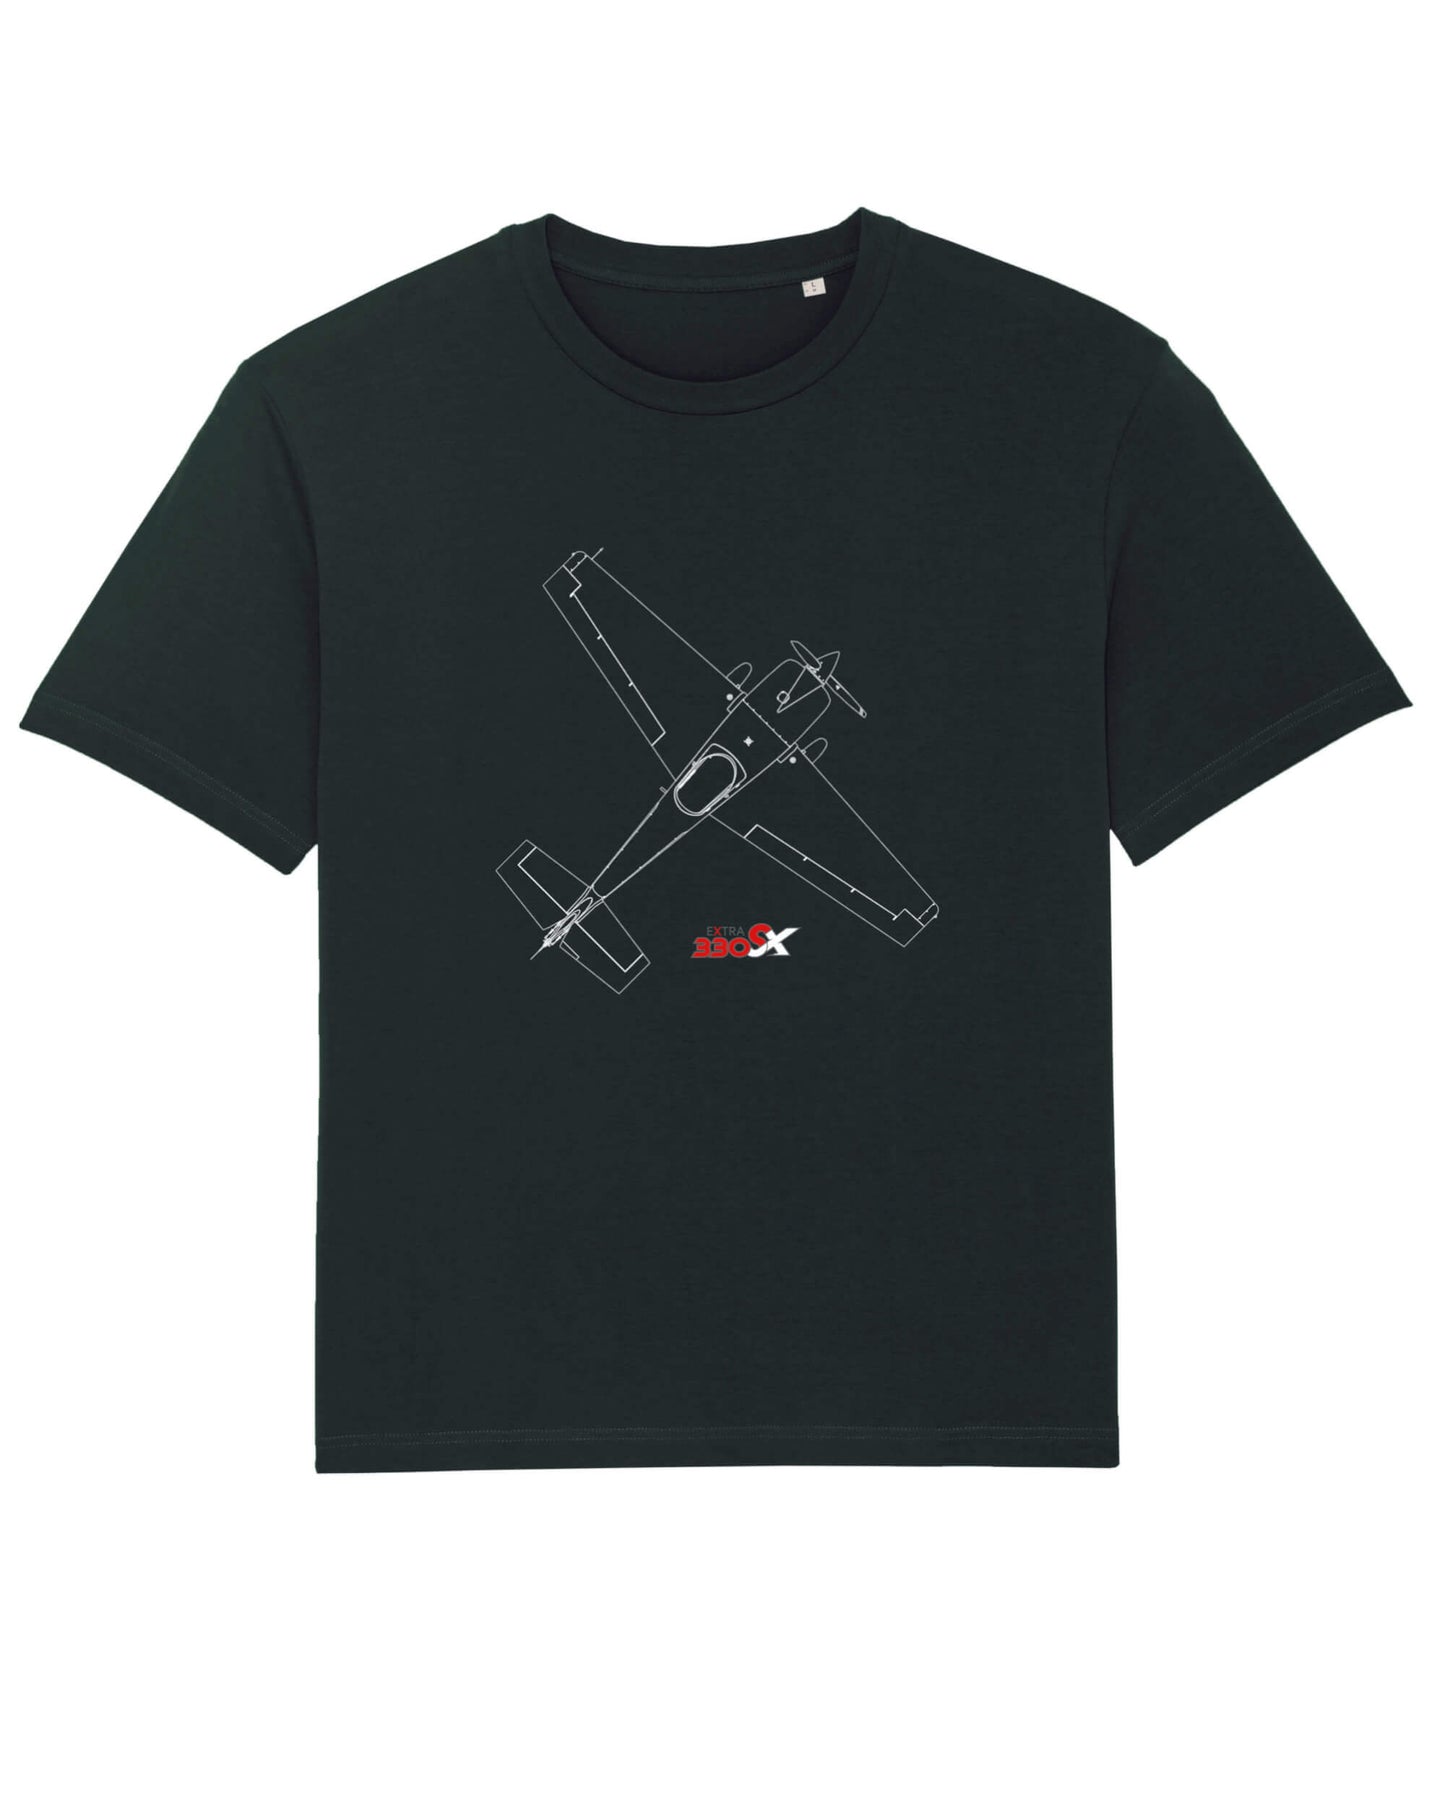 Produktbild eines schwarzen T-shirts aus 100% Bio-Baumwolle mit dem EXTRA 330-SX Typlogo mittig, auf der Vorderseite. Darüber ist eine technische Zeichnung der EA-330 SX, Top-view, 45° rechtsseitig gedreht, als Printmotiv abgebildet.